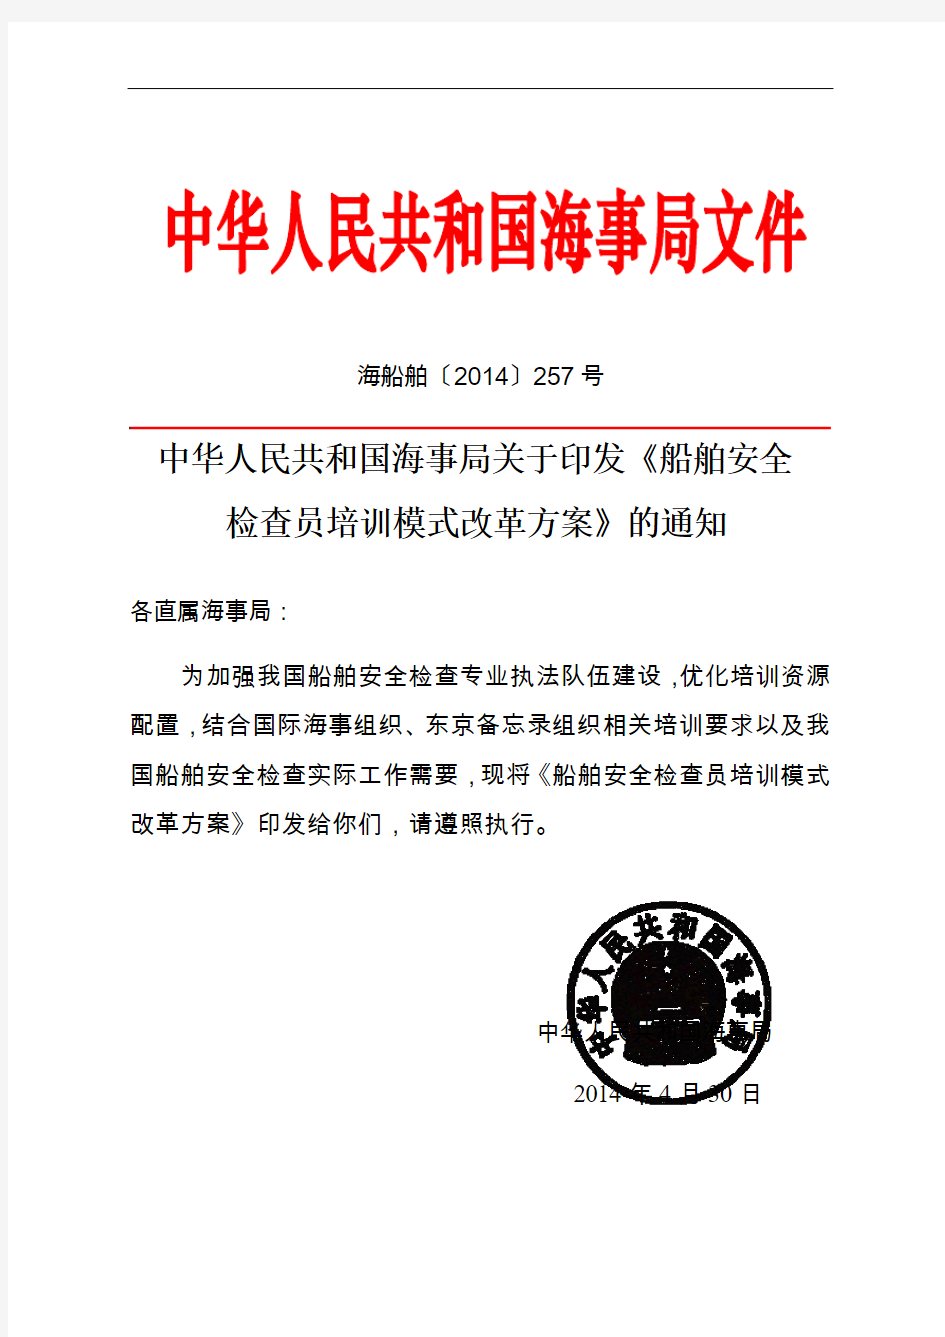 中华人民共和国海事局关于印发《船舶安全检查员培训模式改革方案》的通知